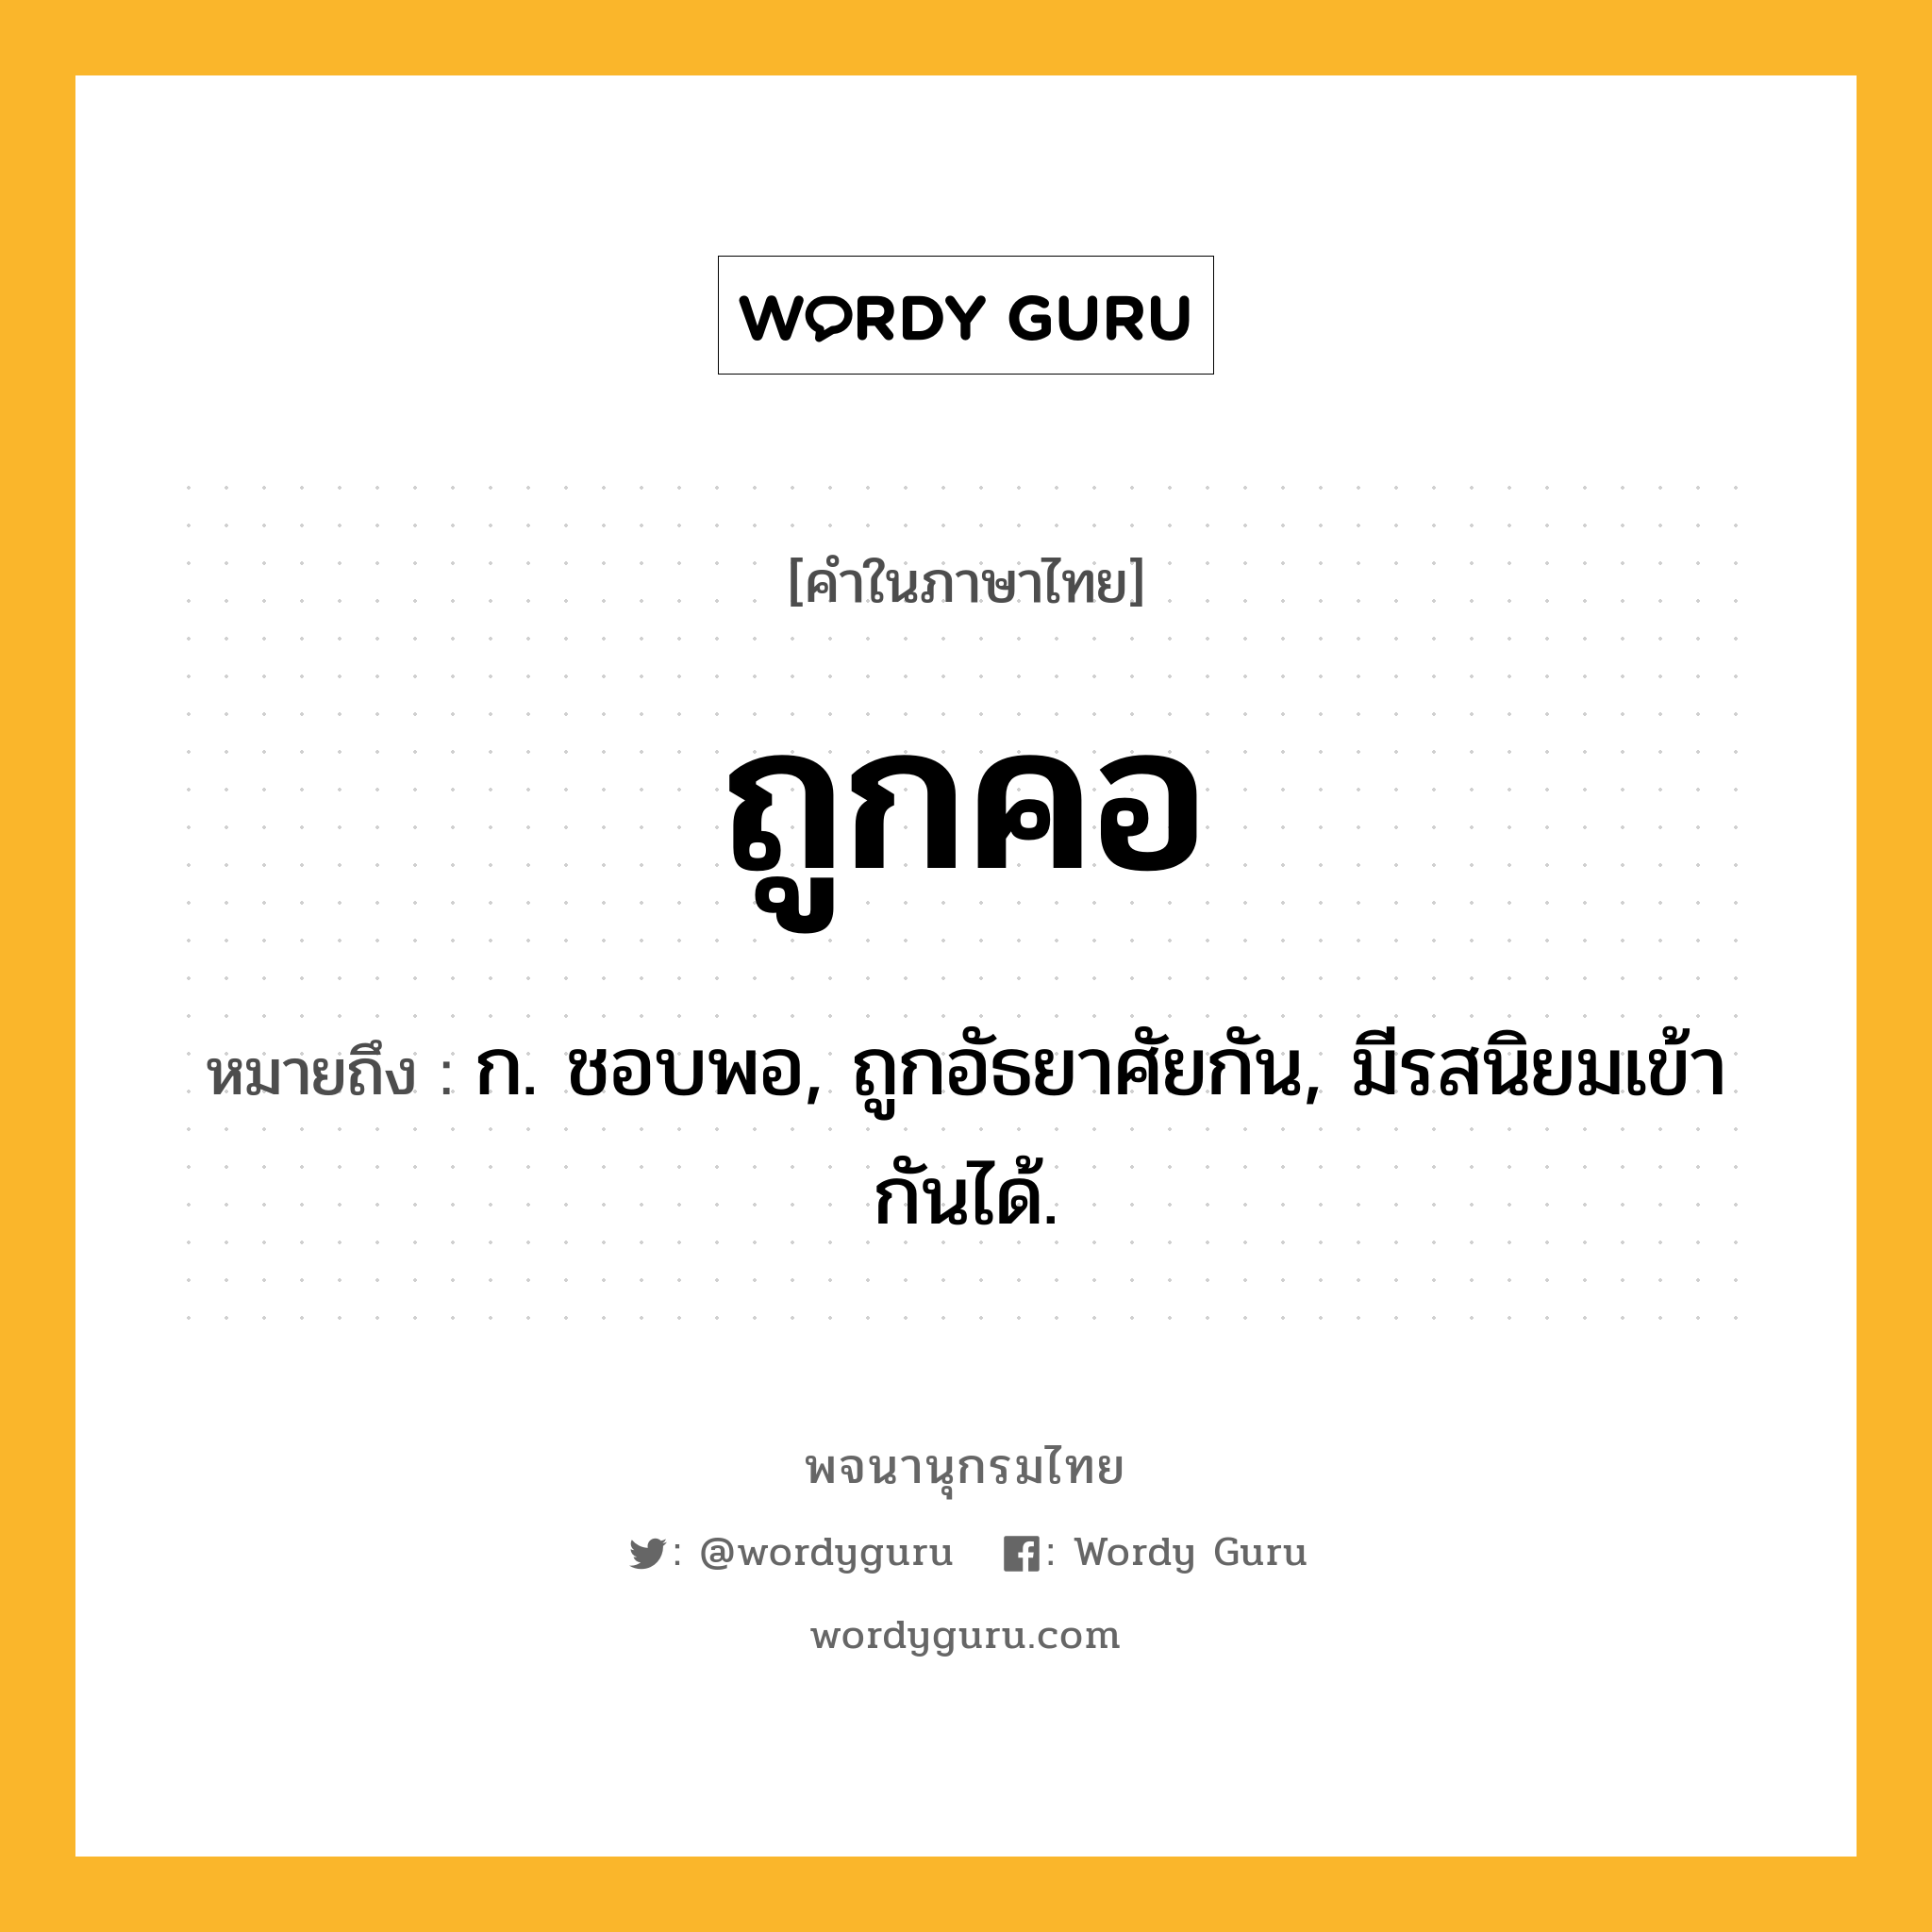 ถูกคอ หมายถึงอะไร?, คำในภาษาไทย ถูกคอ หมายถึง ก. ชอบพอ, ถูกอัธยาศัยกัน, มีรสนิยมเข้ากันได้.